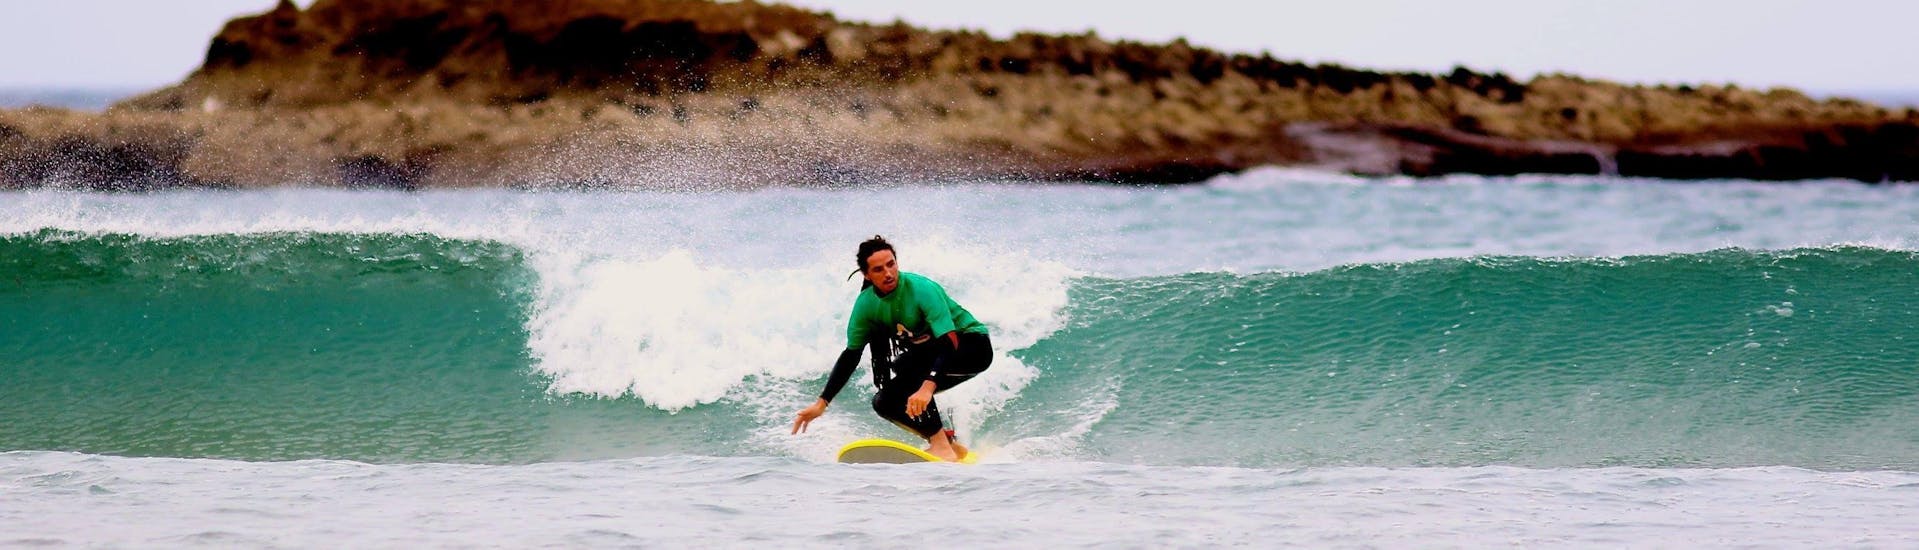 Un jeune surfeur prend une vague lors d'un Cours de Surf Privé pour Enfants & Adultes - Tous Niveaux avec Amado Surf School.